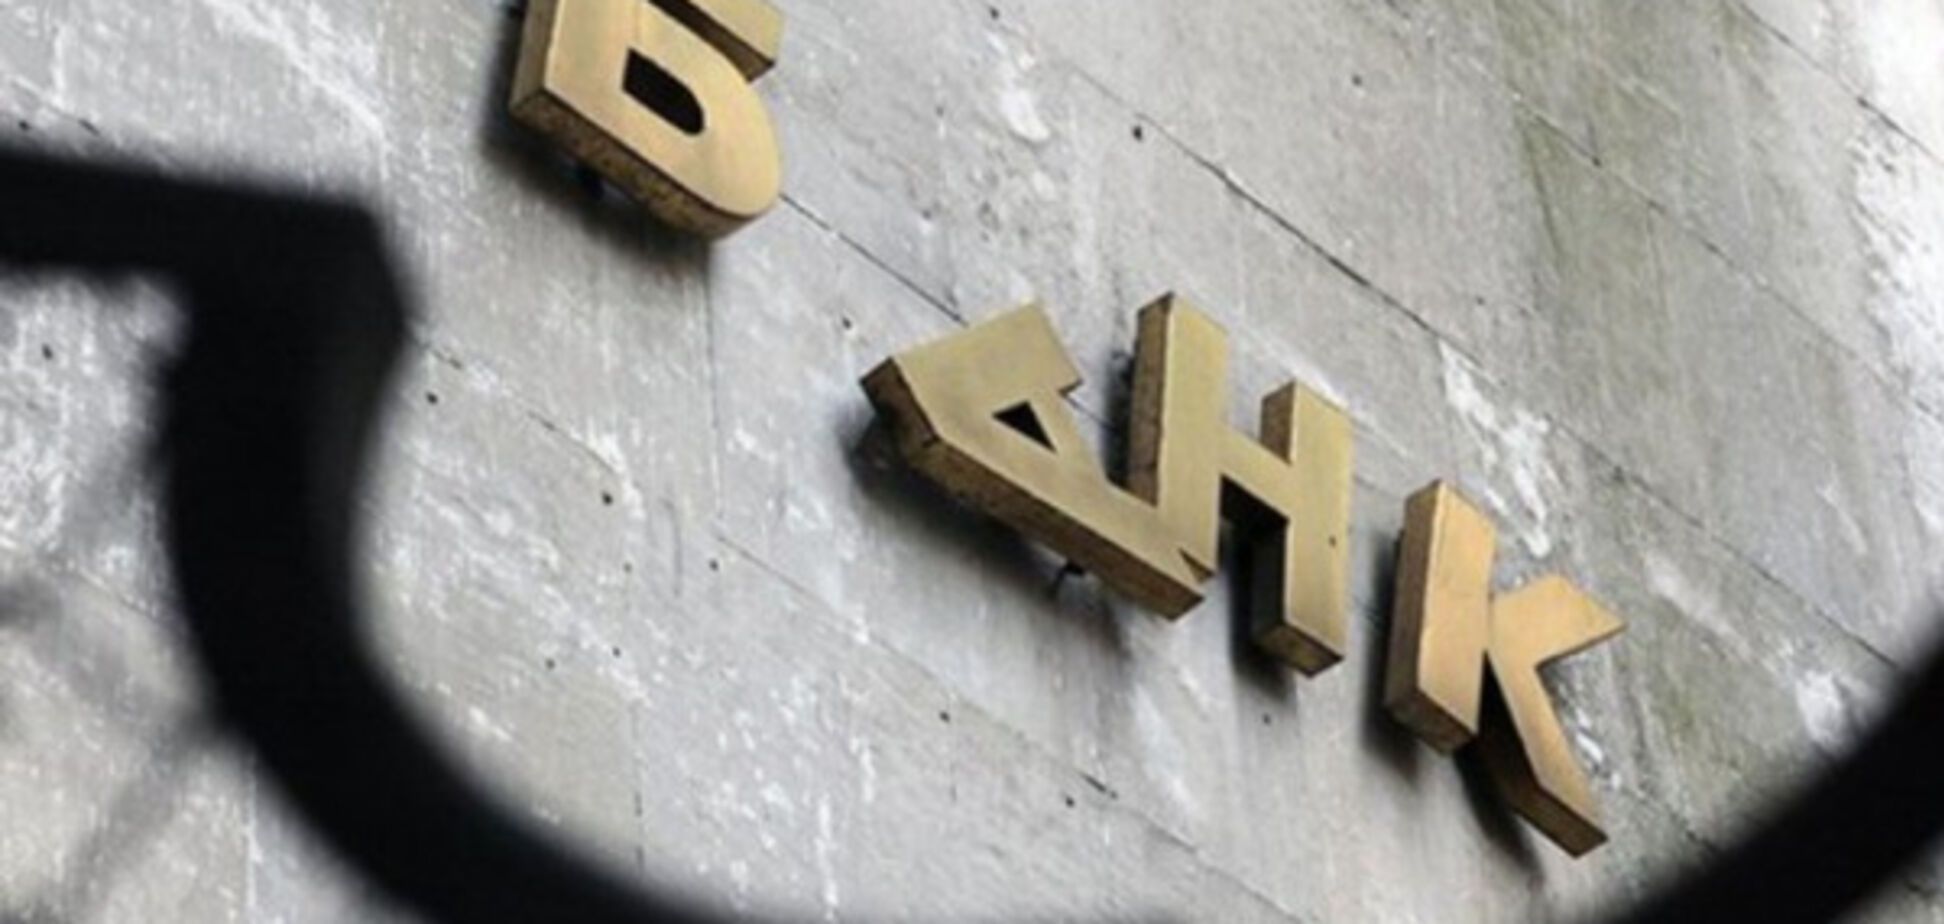 Ще один український банк заявив про самоліквідацію